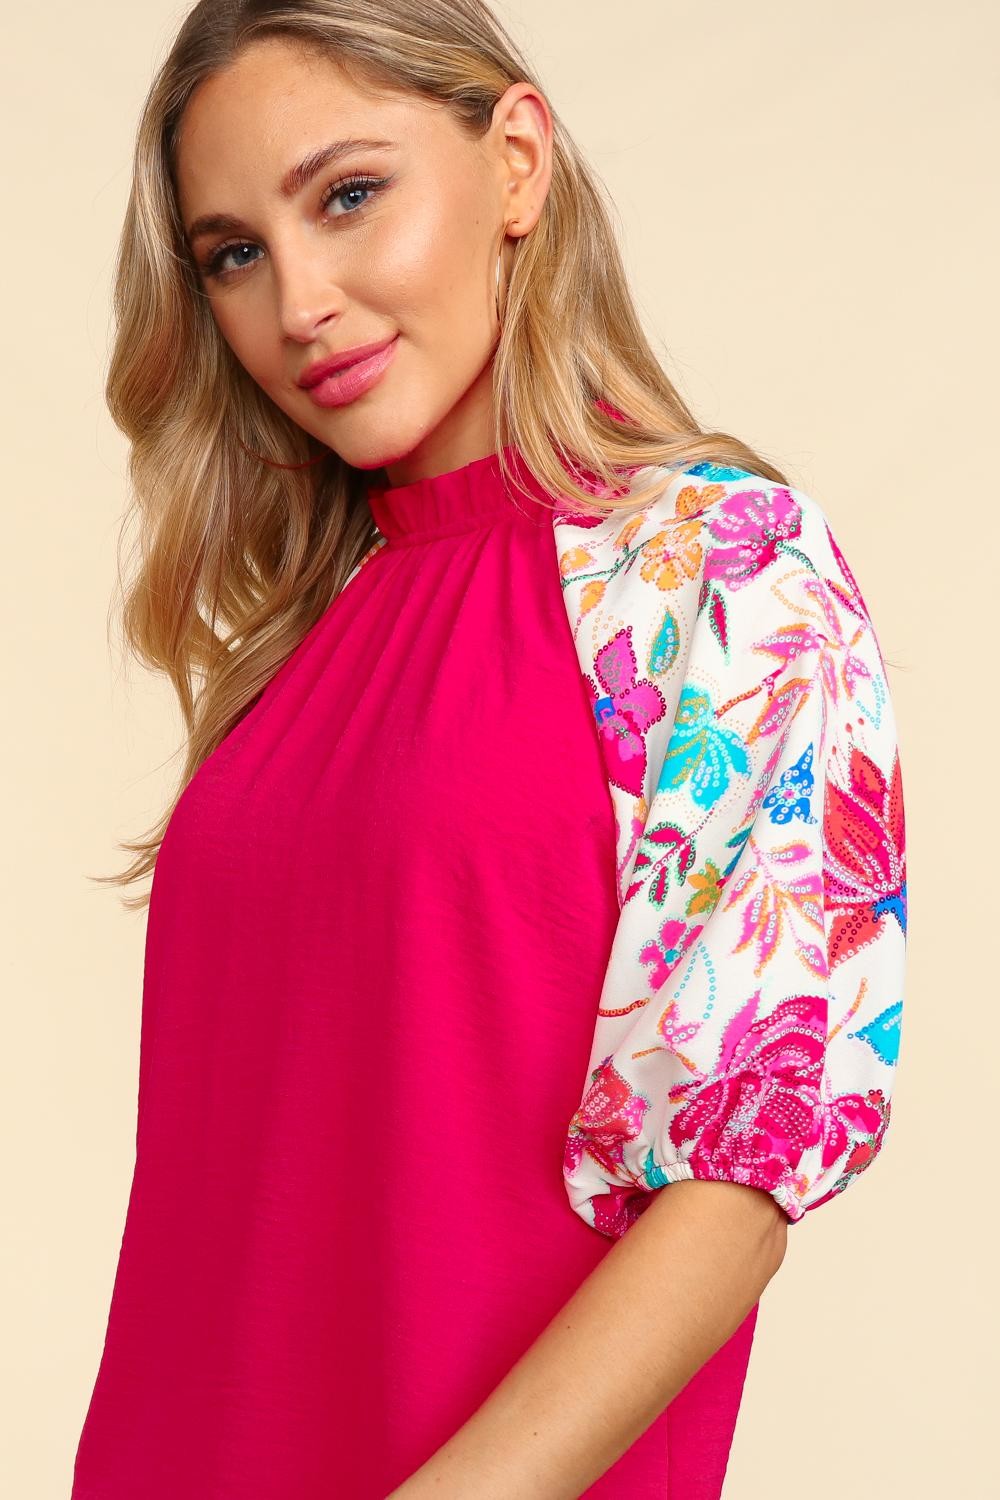 Floral Sequin Print Color Block Woven Blouse